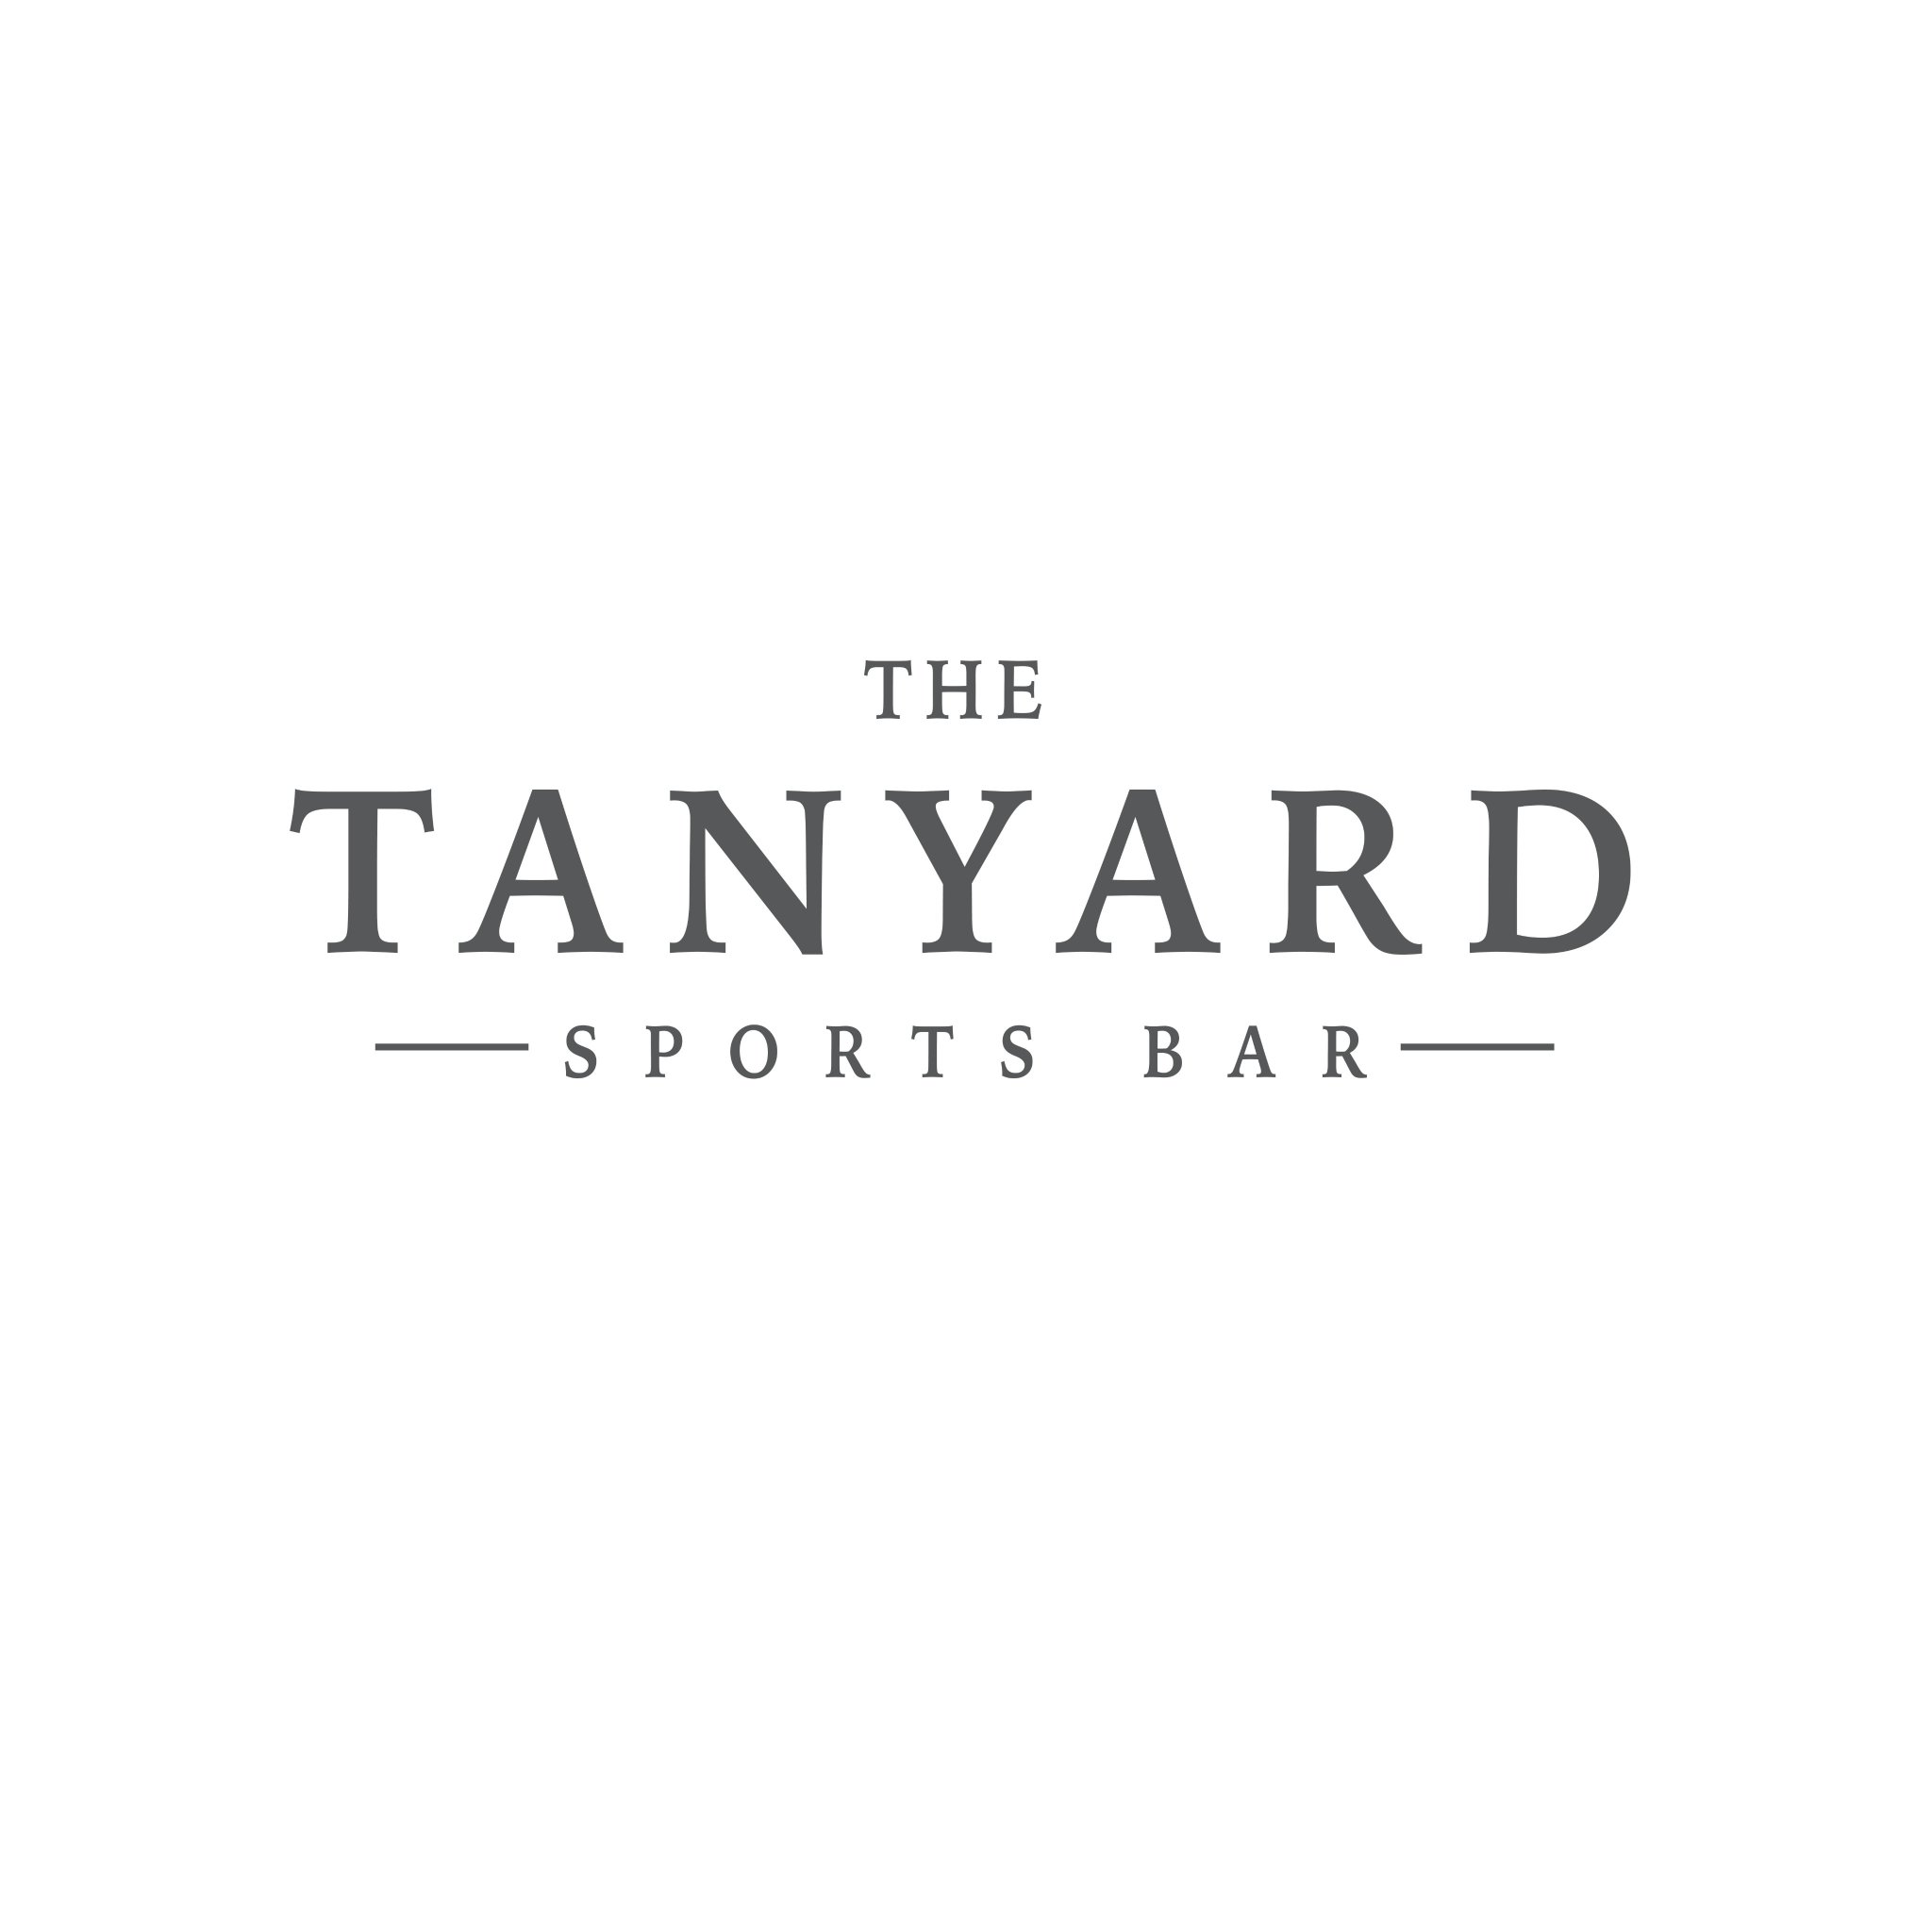 The Tanyard